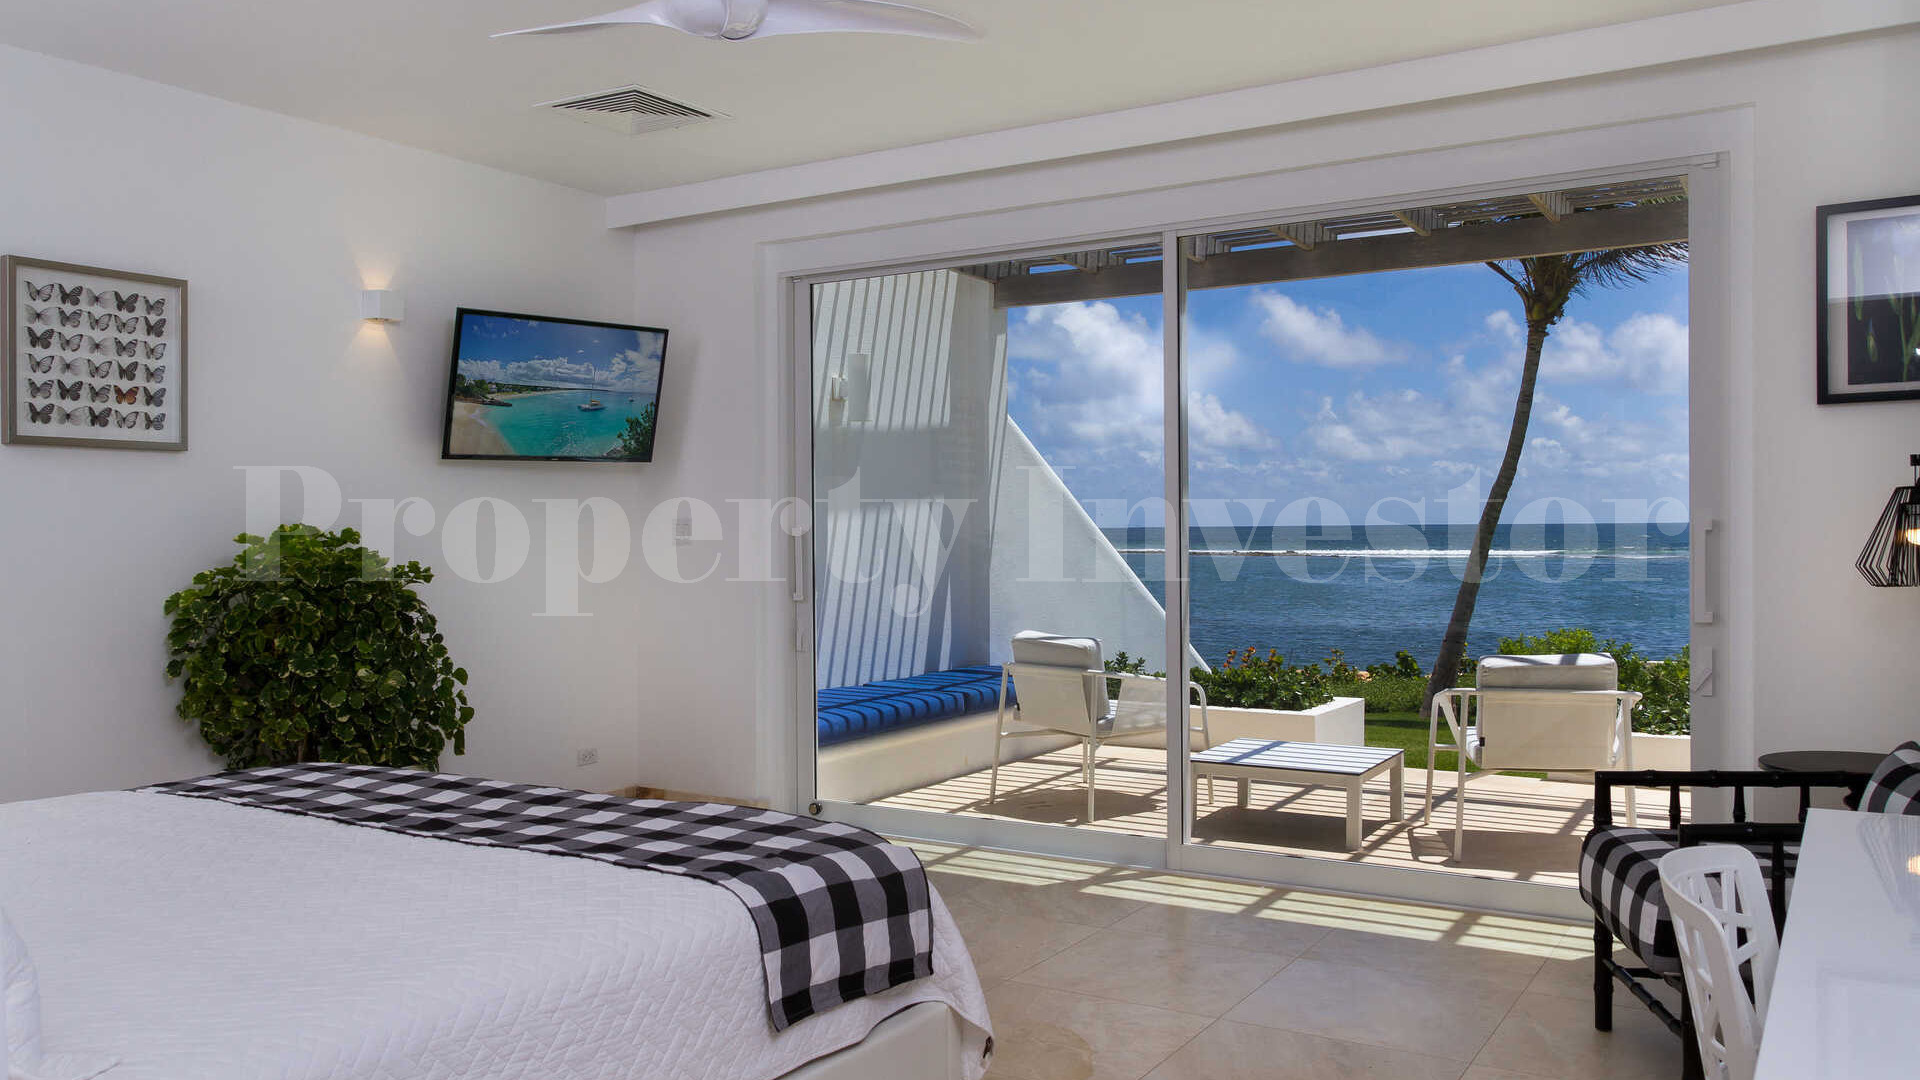 Превосходная современная роскошная вилла с 10 спальнями на пляже в Ангилья